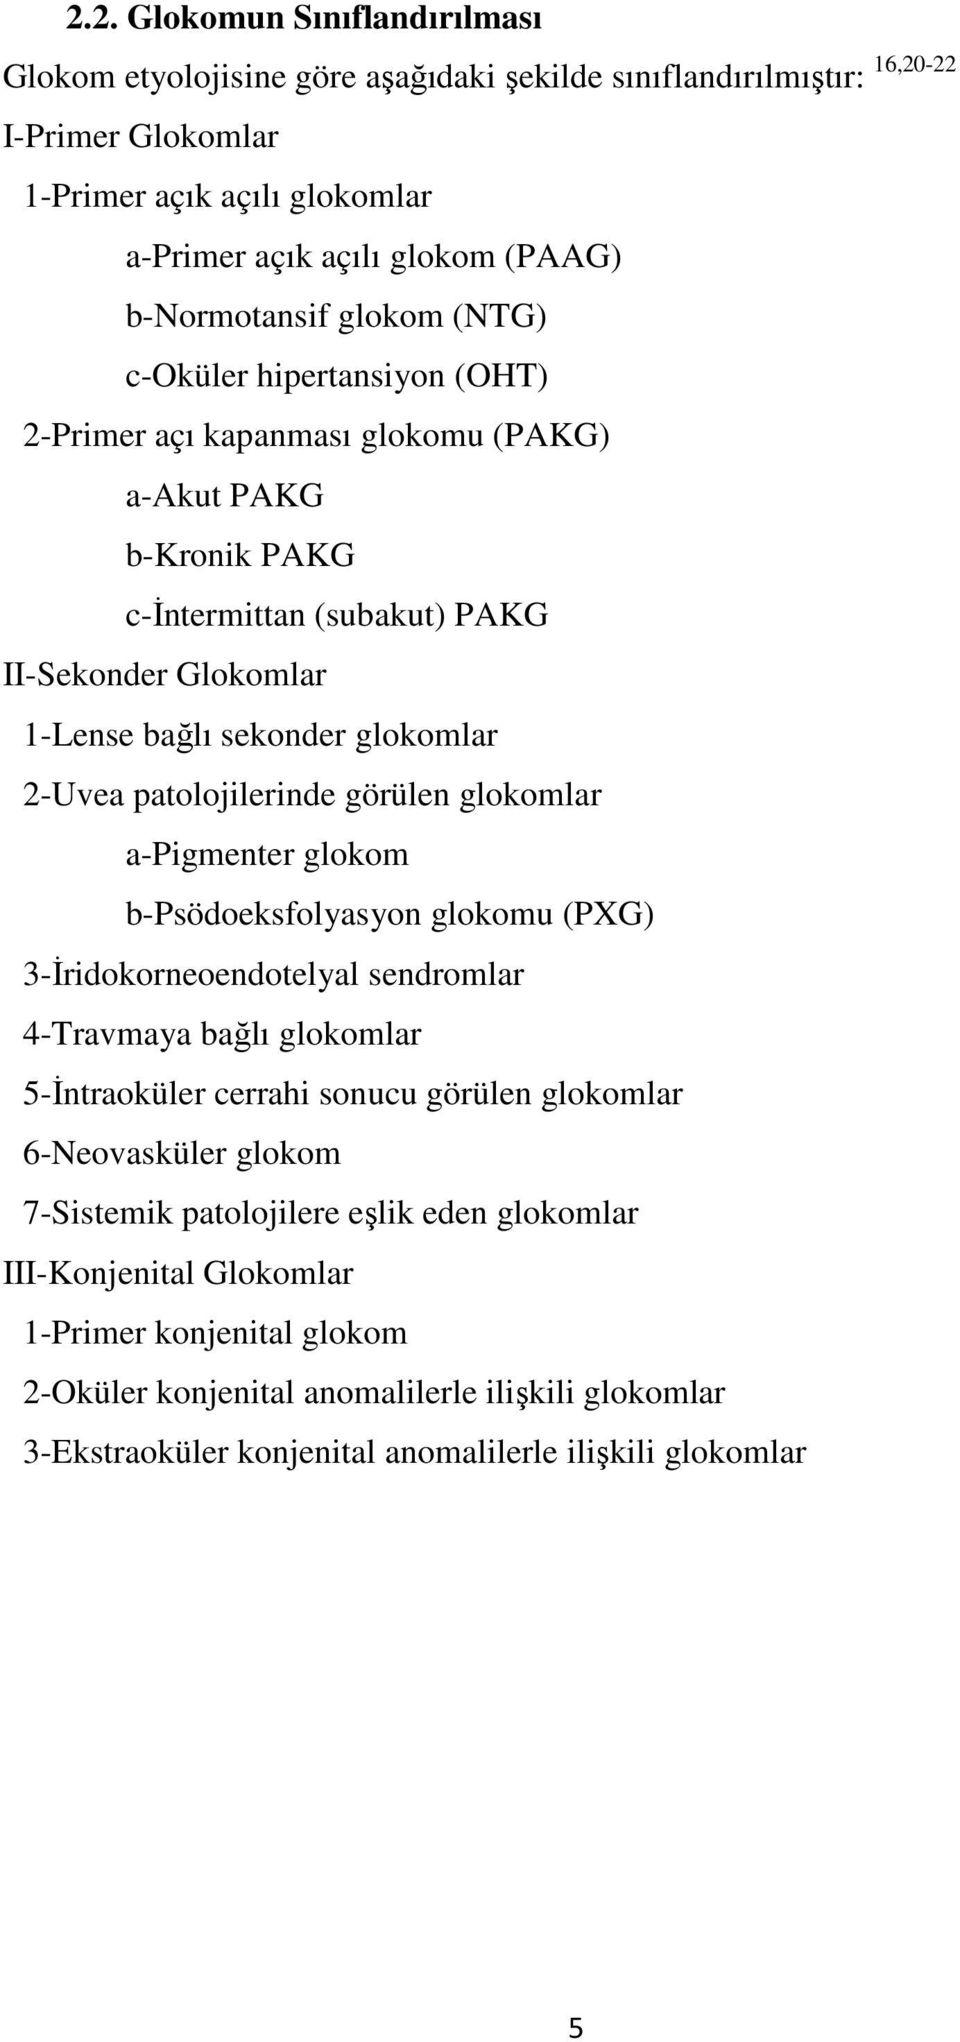 glokomlar 2-Uvea patolojilerinde görülen glokomlar a-pigmenter glokom b-psödoeksfolyasyon glokomu (PXG) 3-Đridokorneoendotelyal sendromlar 4-Travmaya bağlı glokomlar 5-Đntraoküler cerrahi sonucu